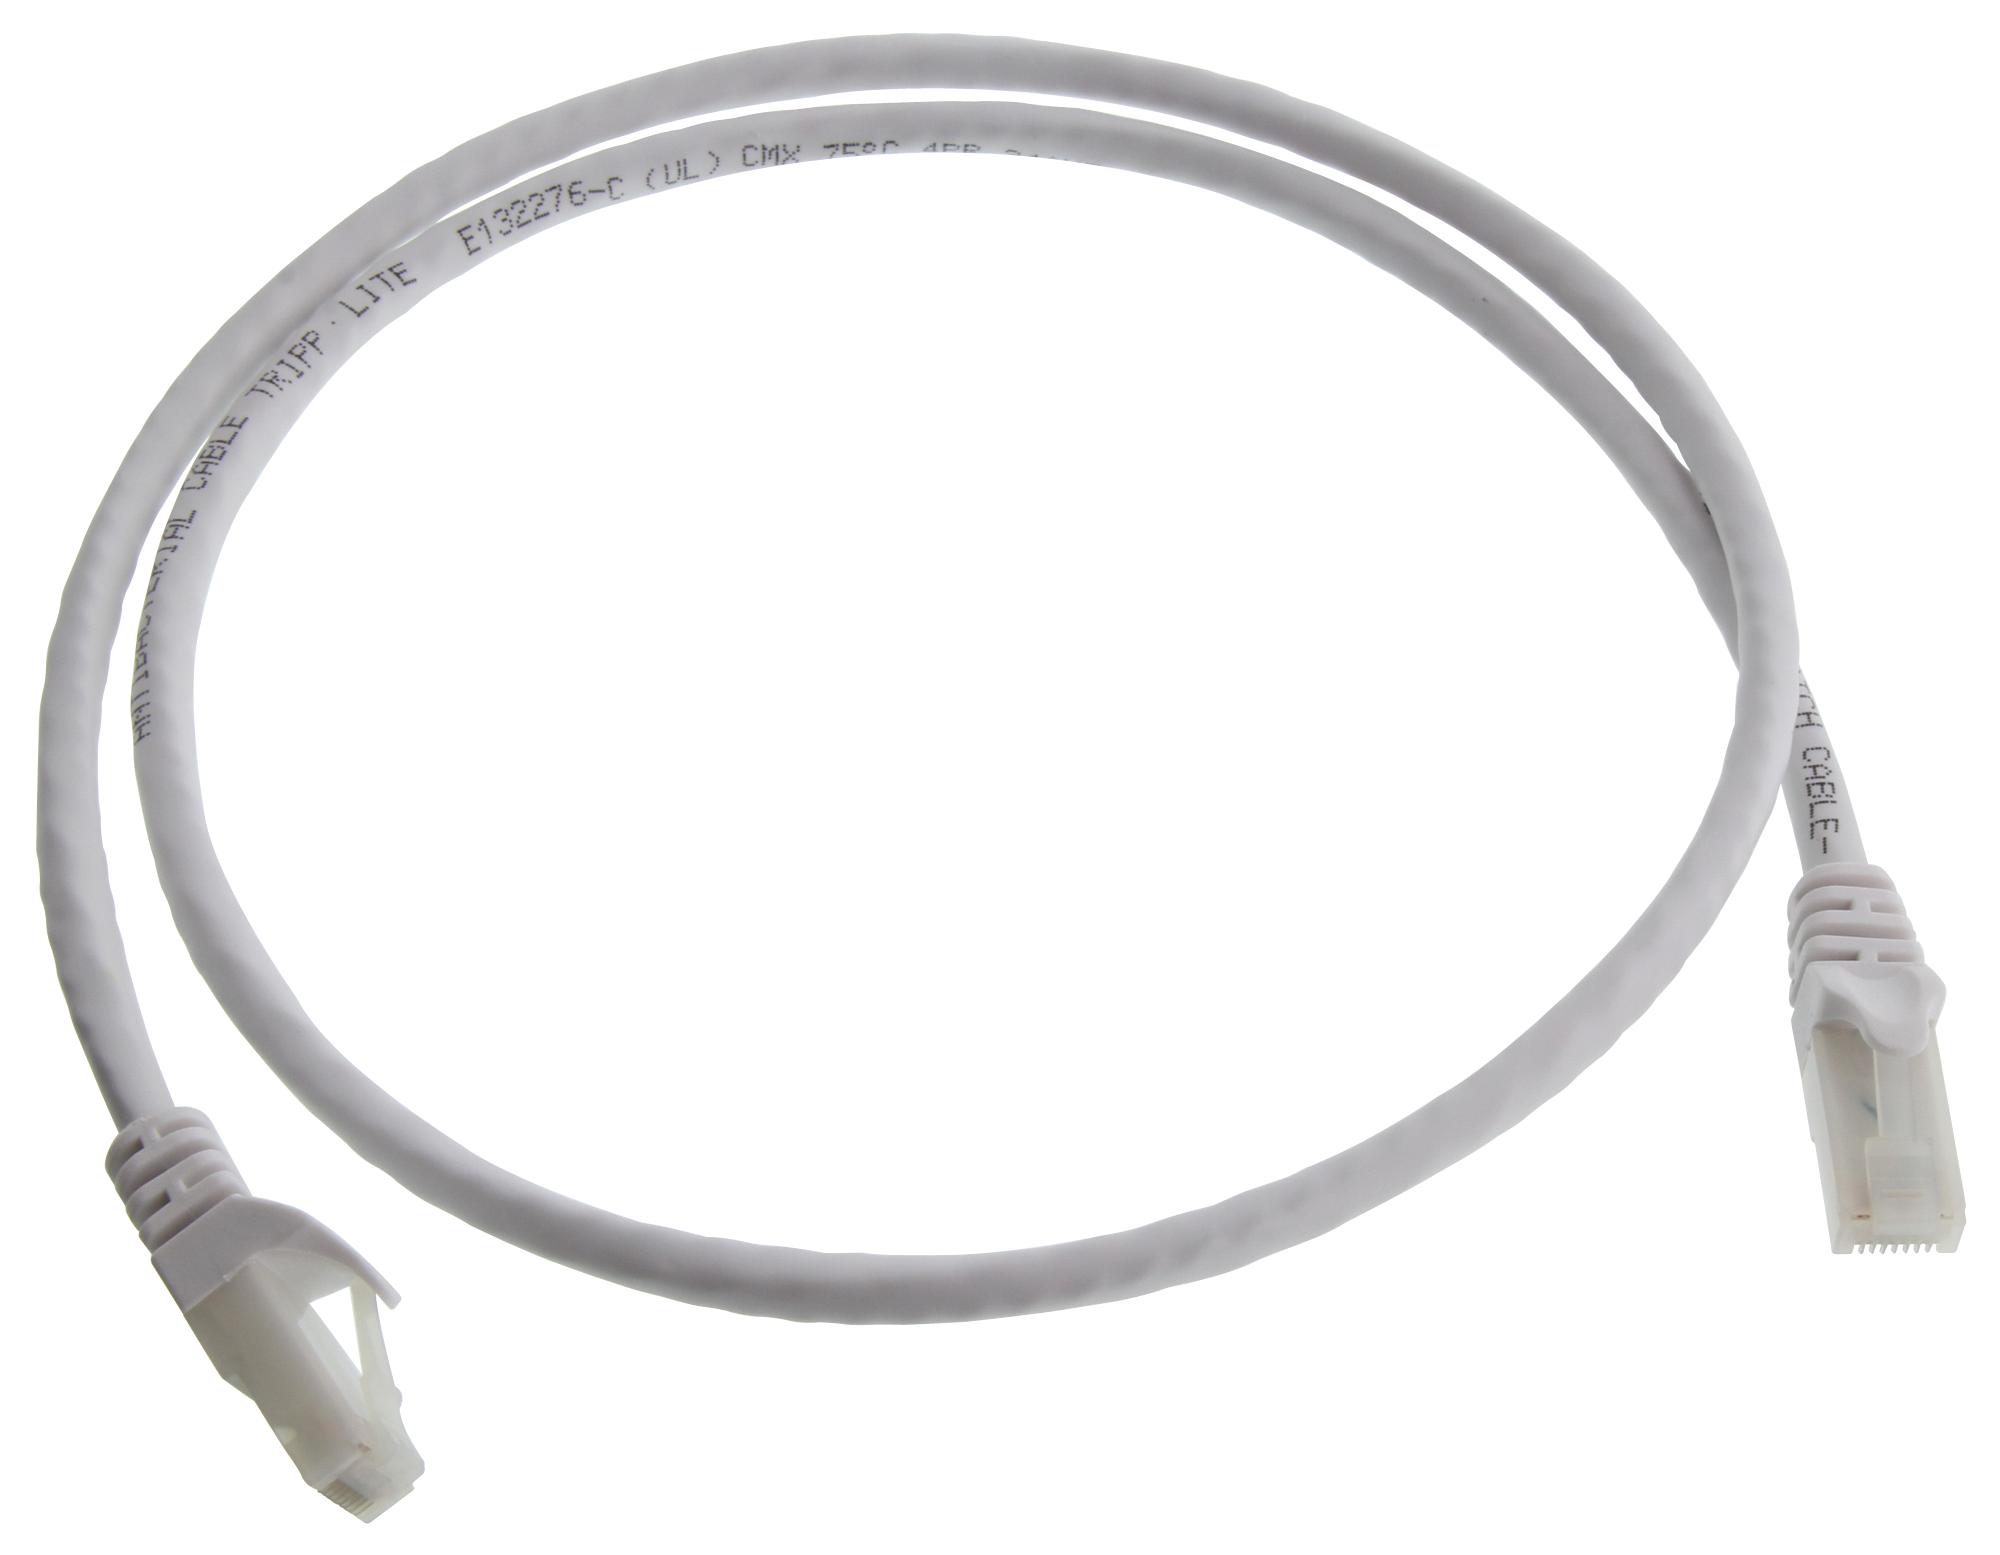 Eaton Tripp Lite N261Ab-003-Wh Enet Cable, Rj45 Plug-Plug, 3Ft, White